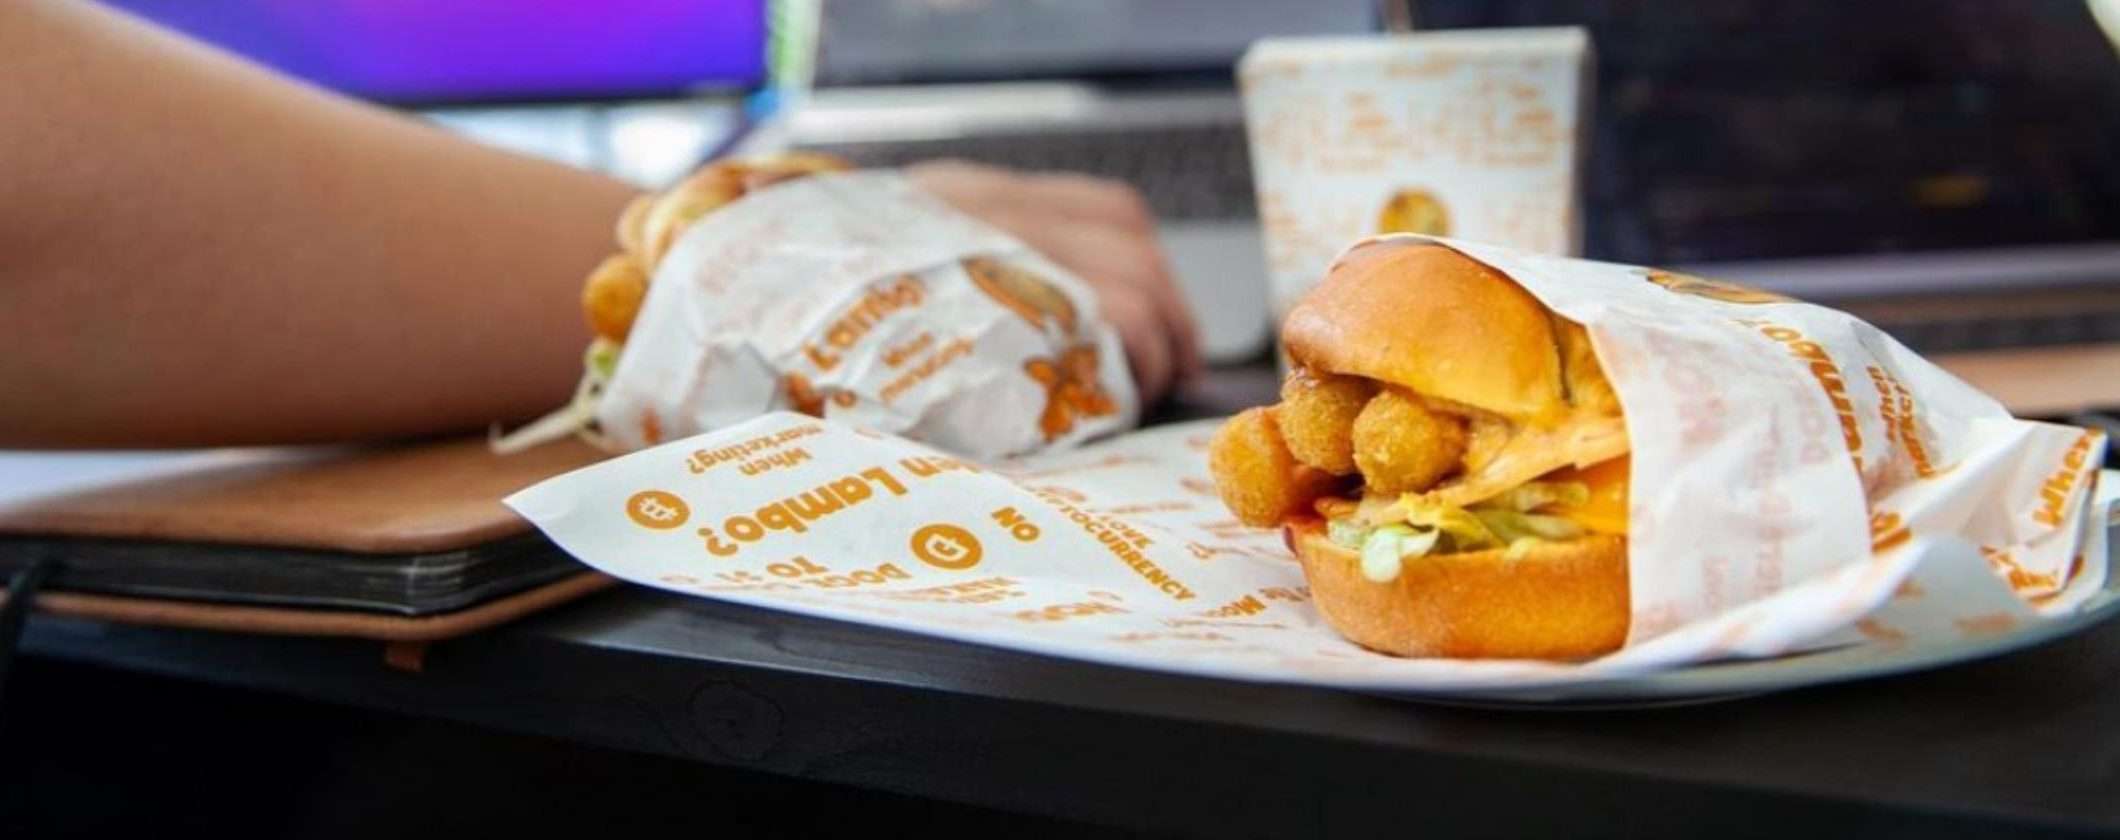 Doge Burger è il primo ristorante a tema Dogecoin lanciato in Dubai